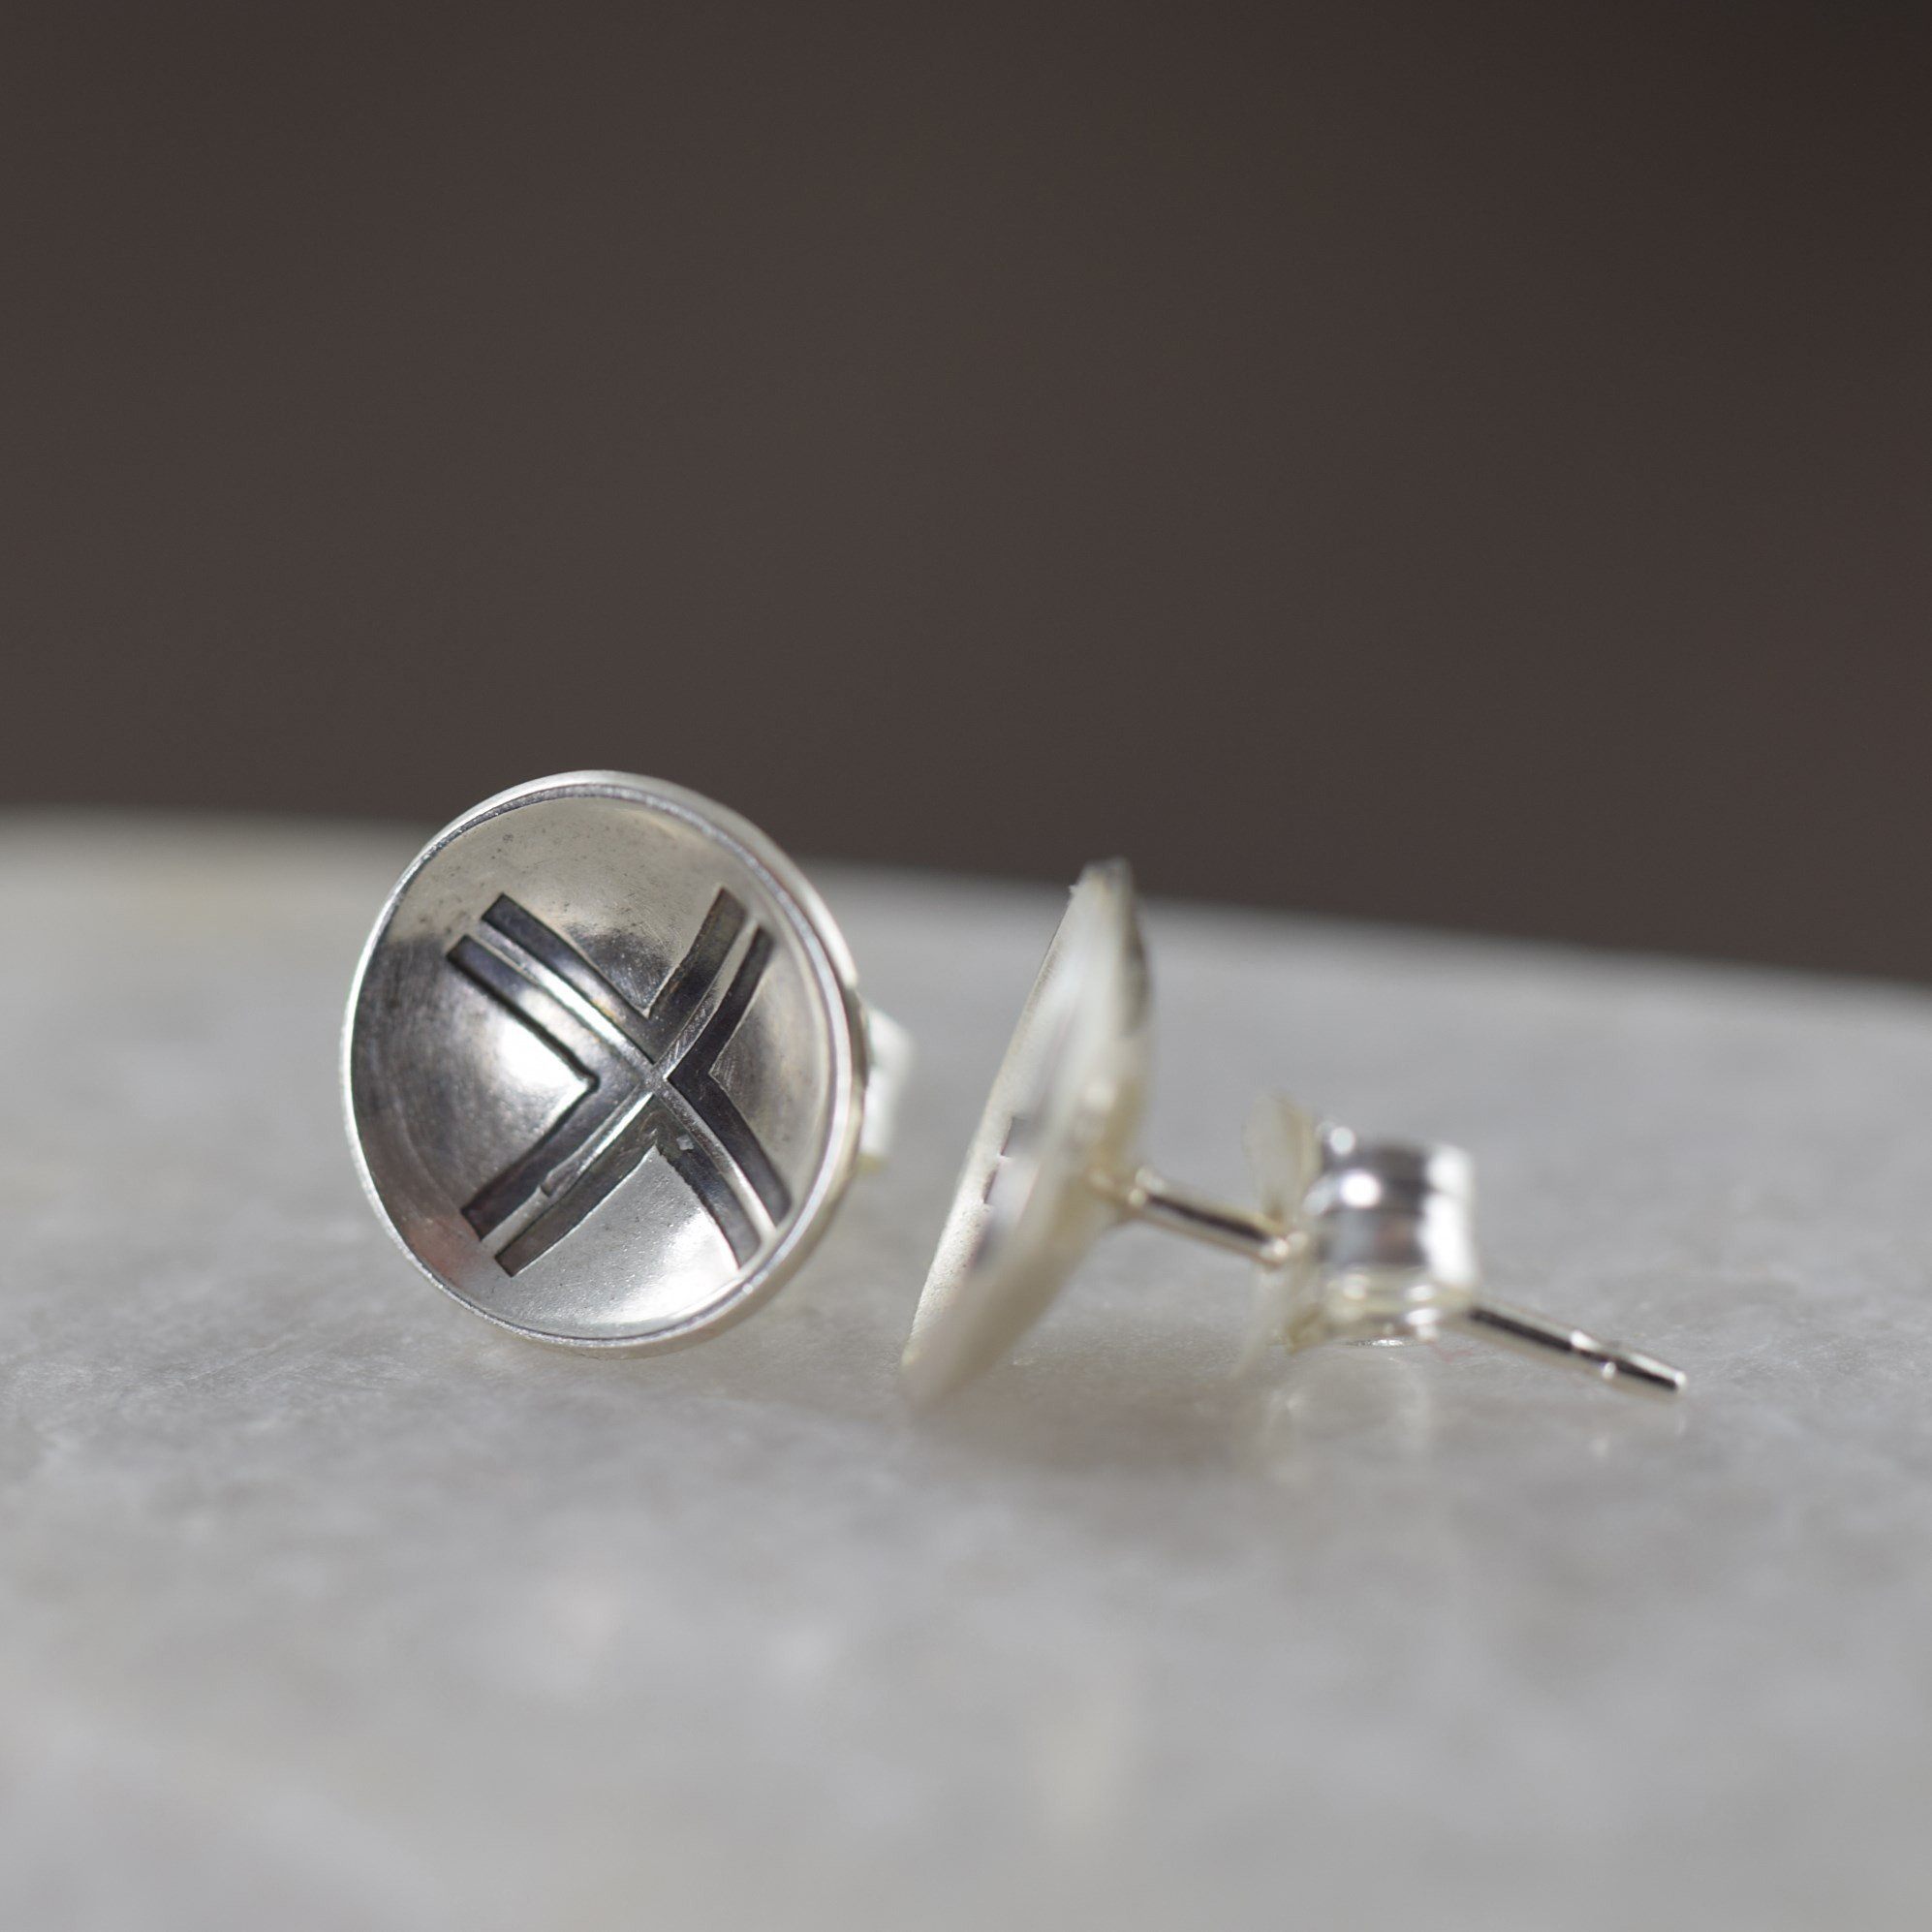 Unisex sterling silver stud earrings featuring a modern cross